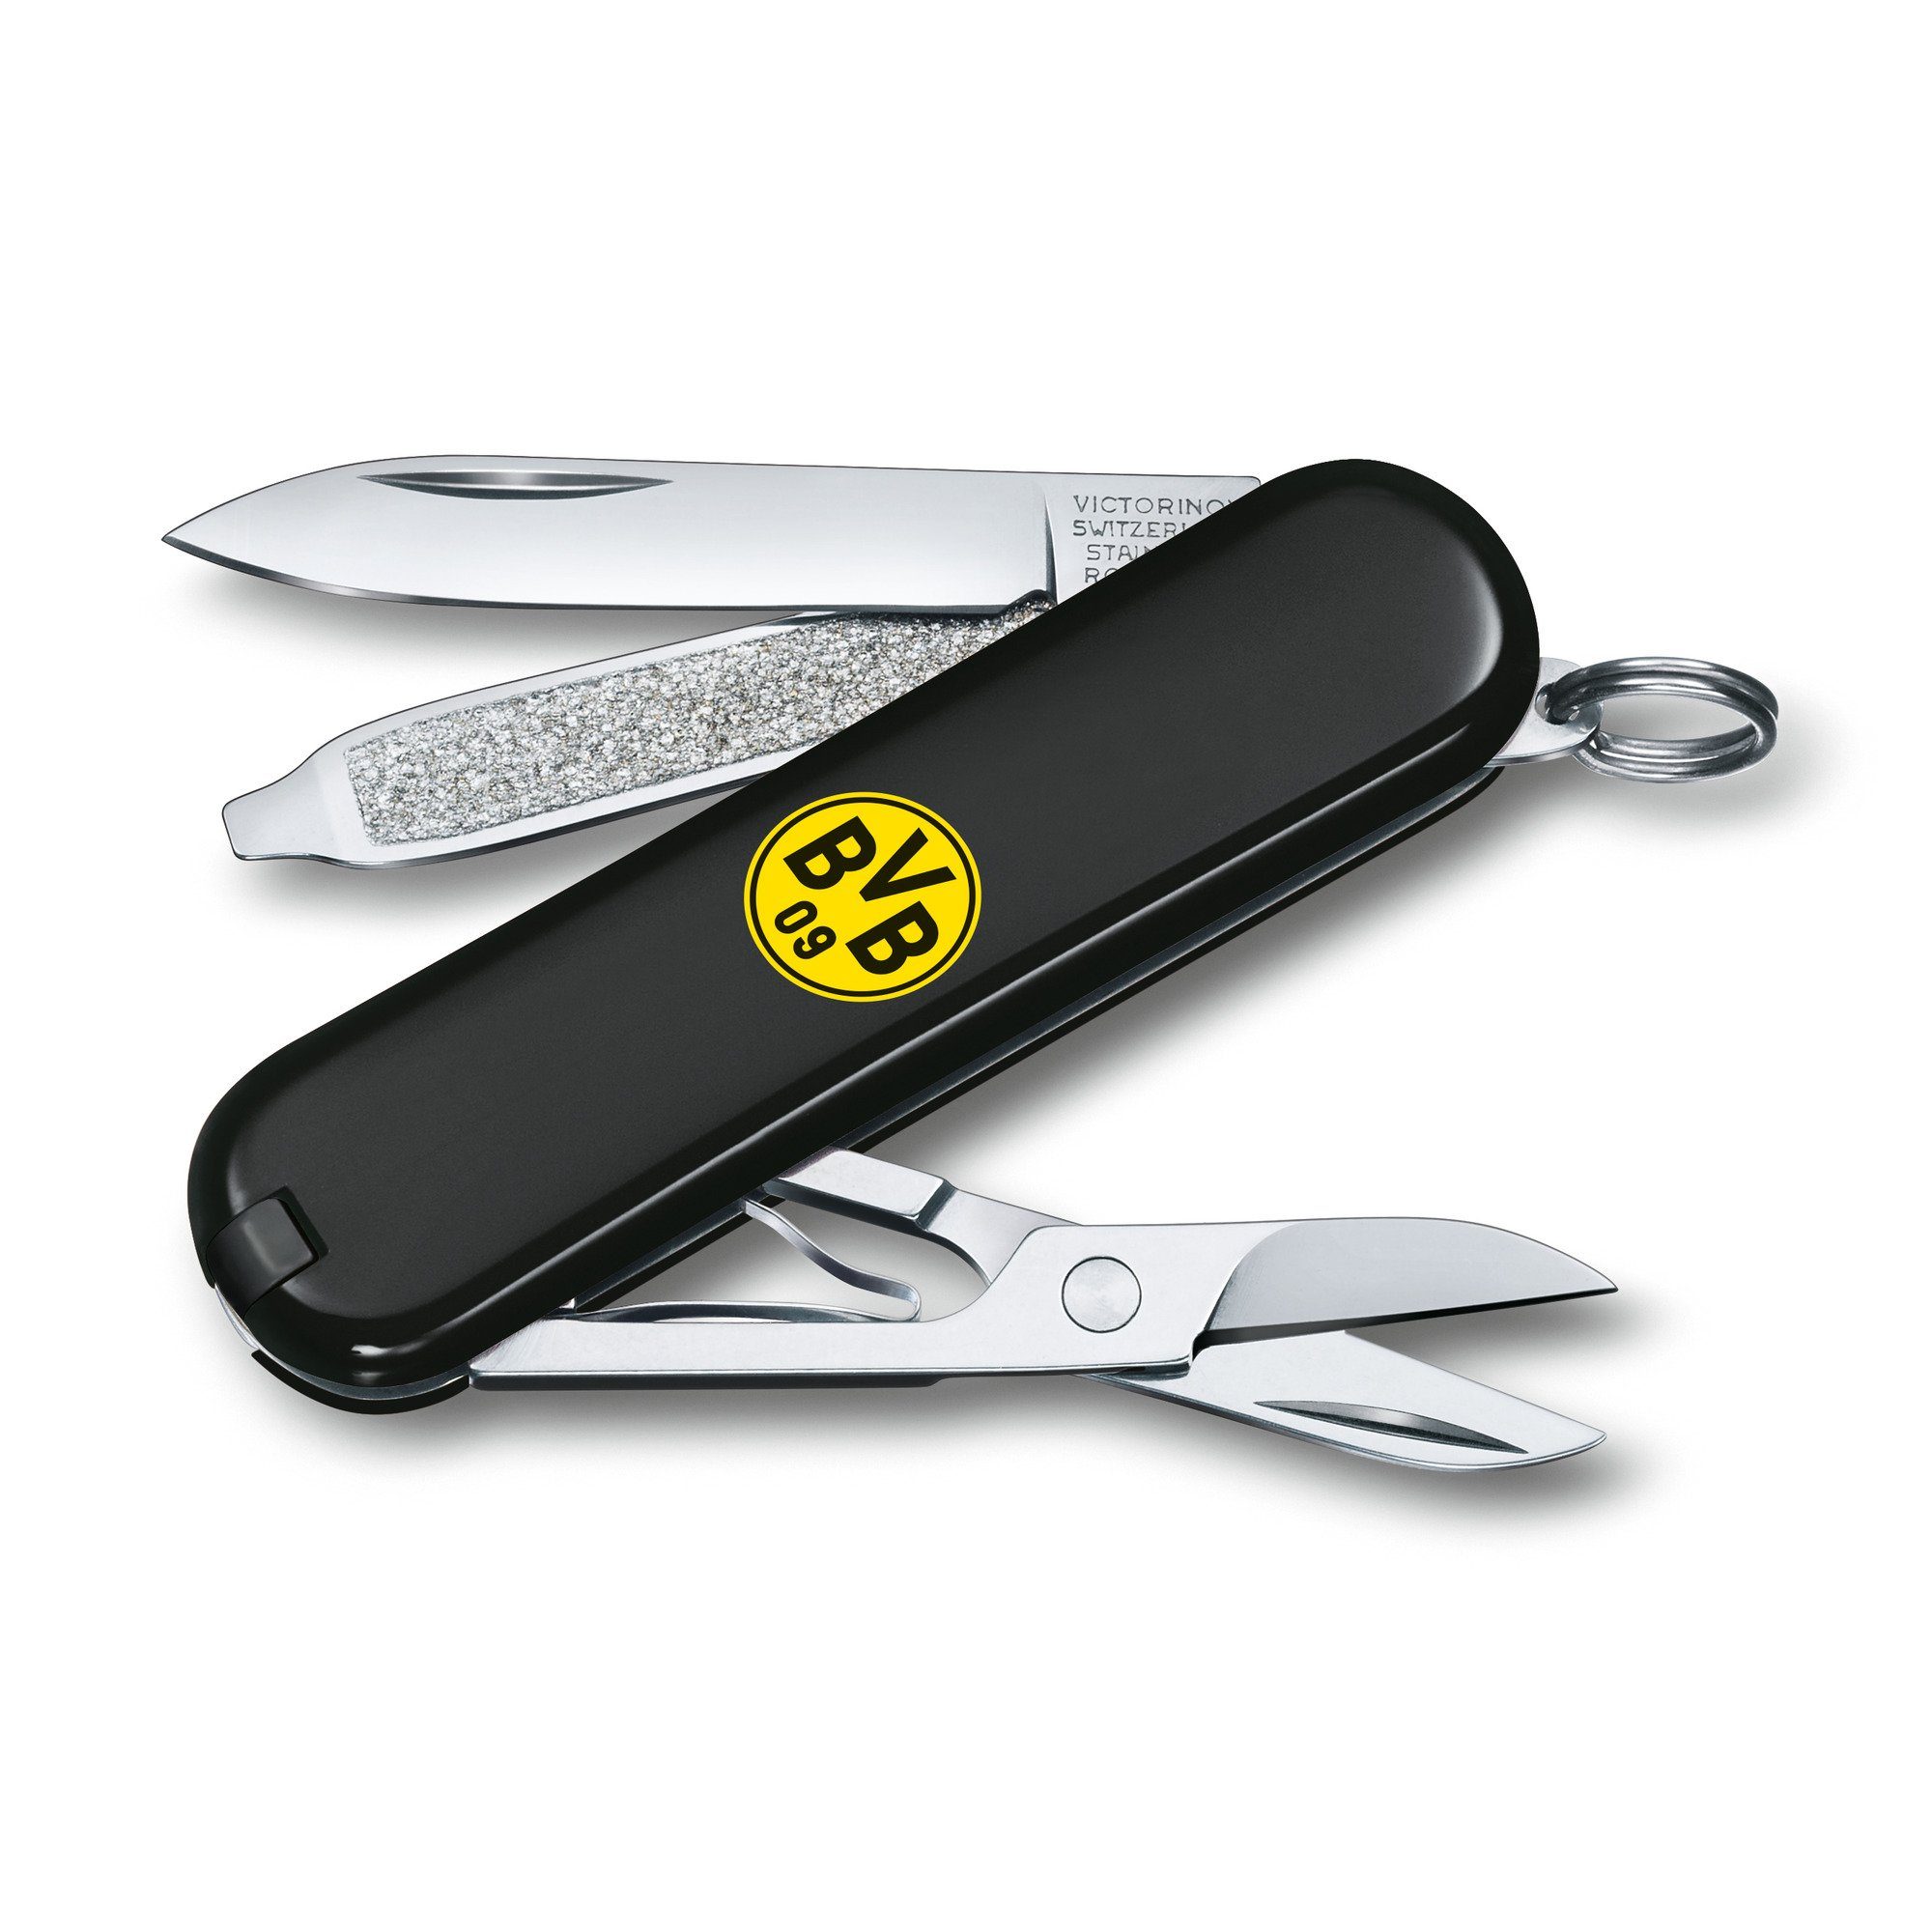 Taschenmesser Victorinox schwarz Classic BVB SD Borussia-Dortmund-Design Messer